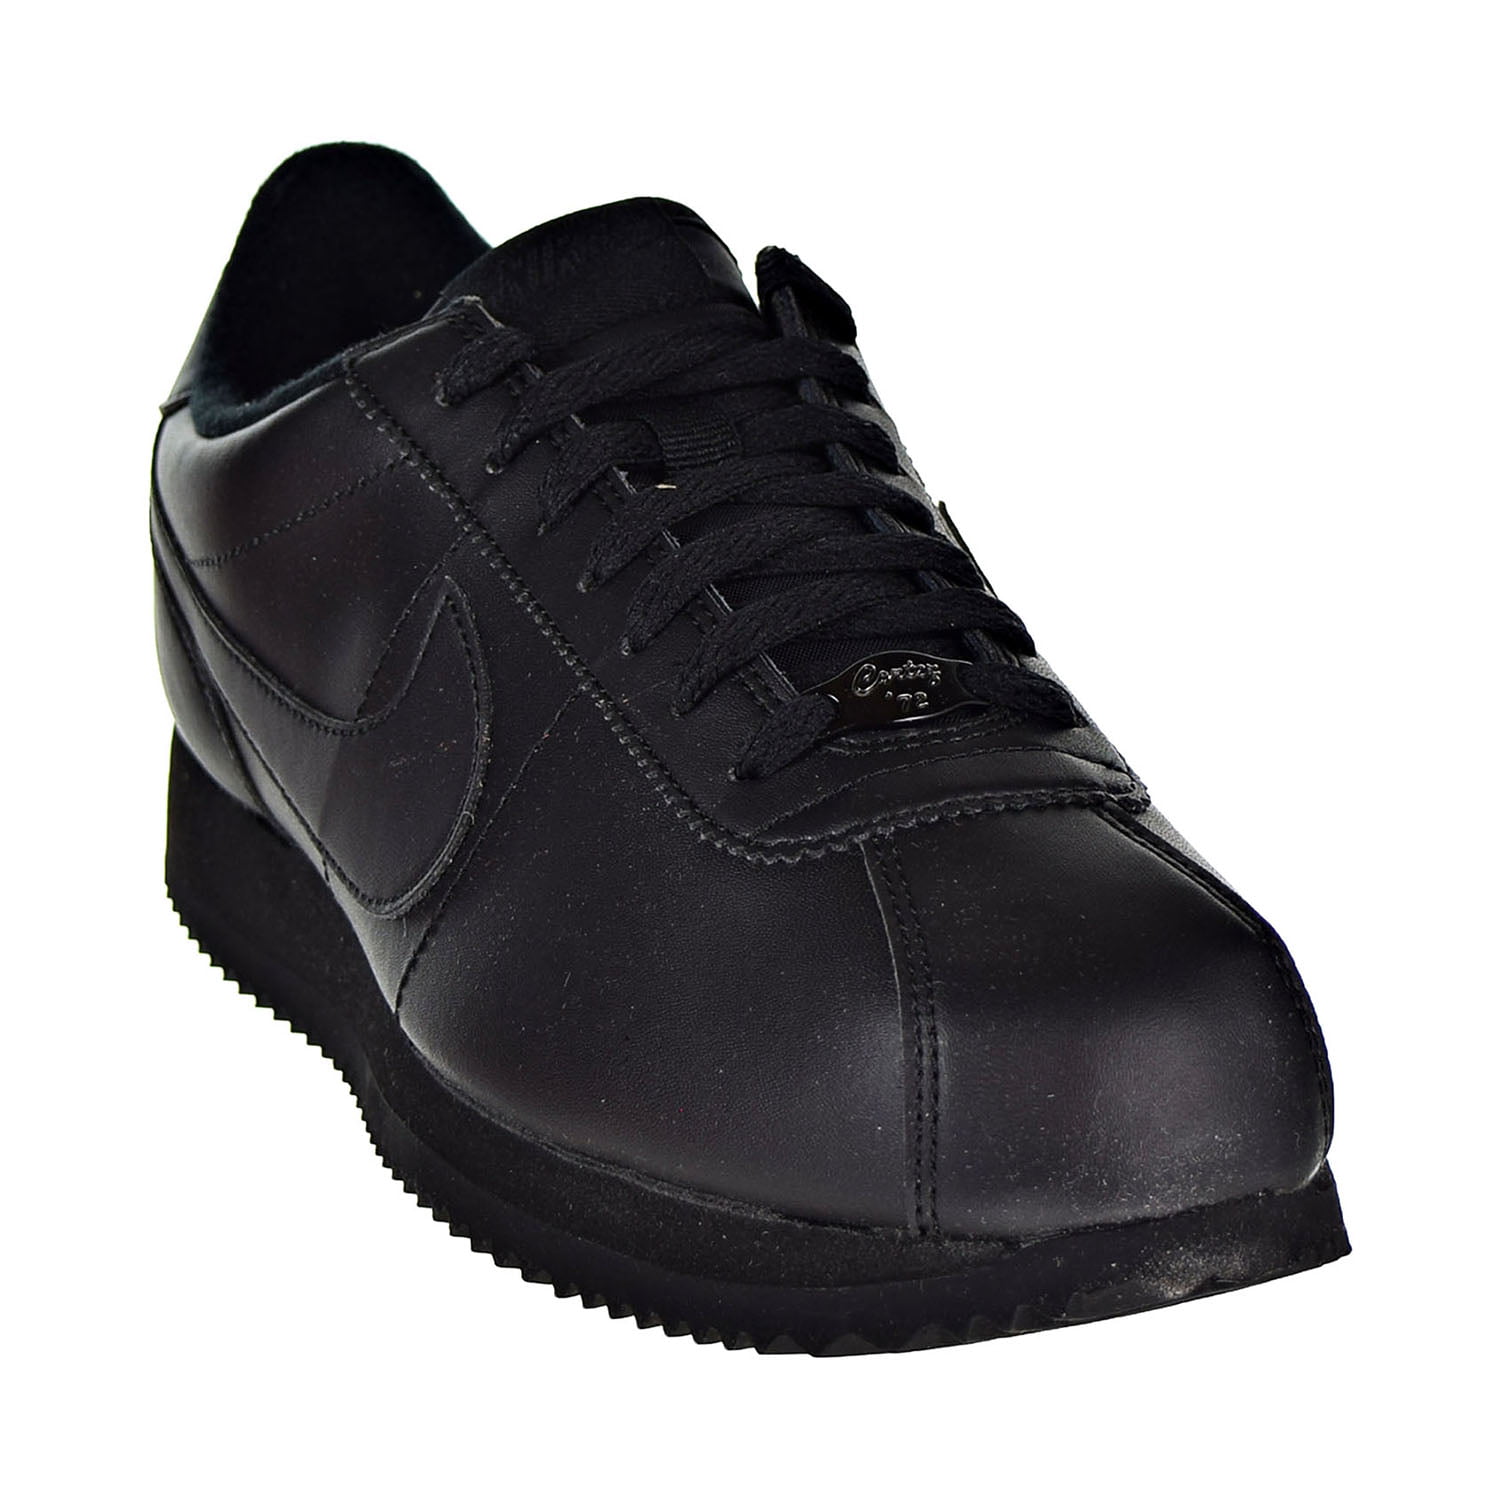 Cortez Basic Men's Shoes Black/Black/Anthracite 819719-001 -